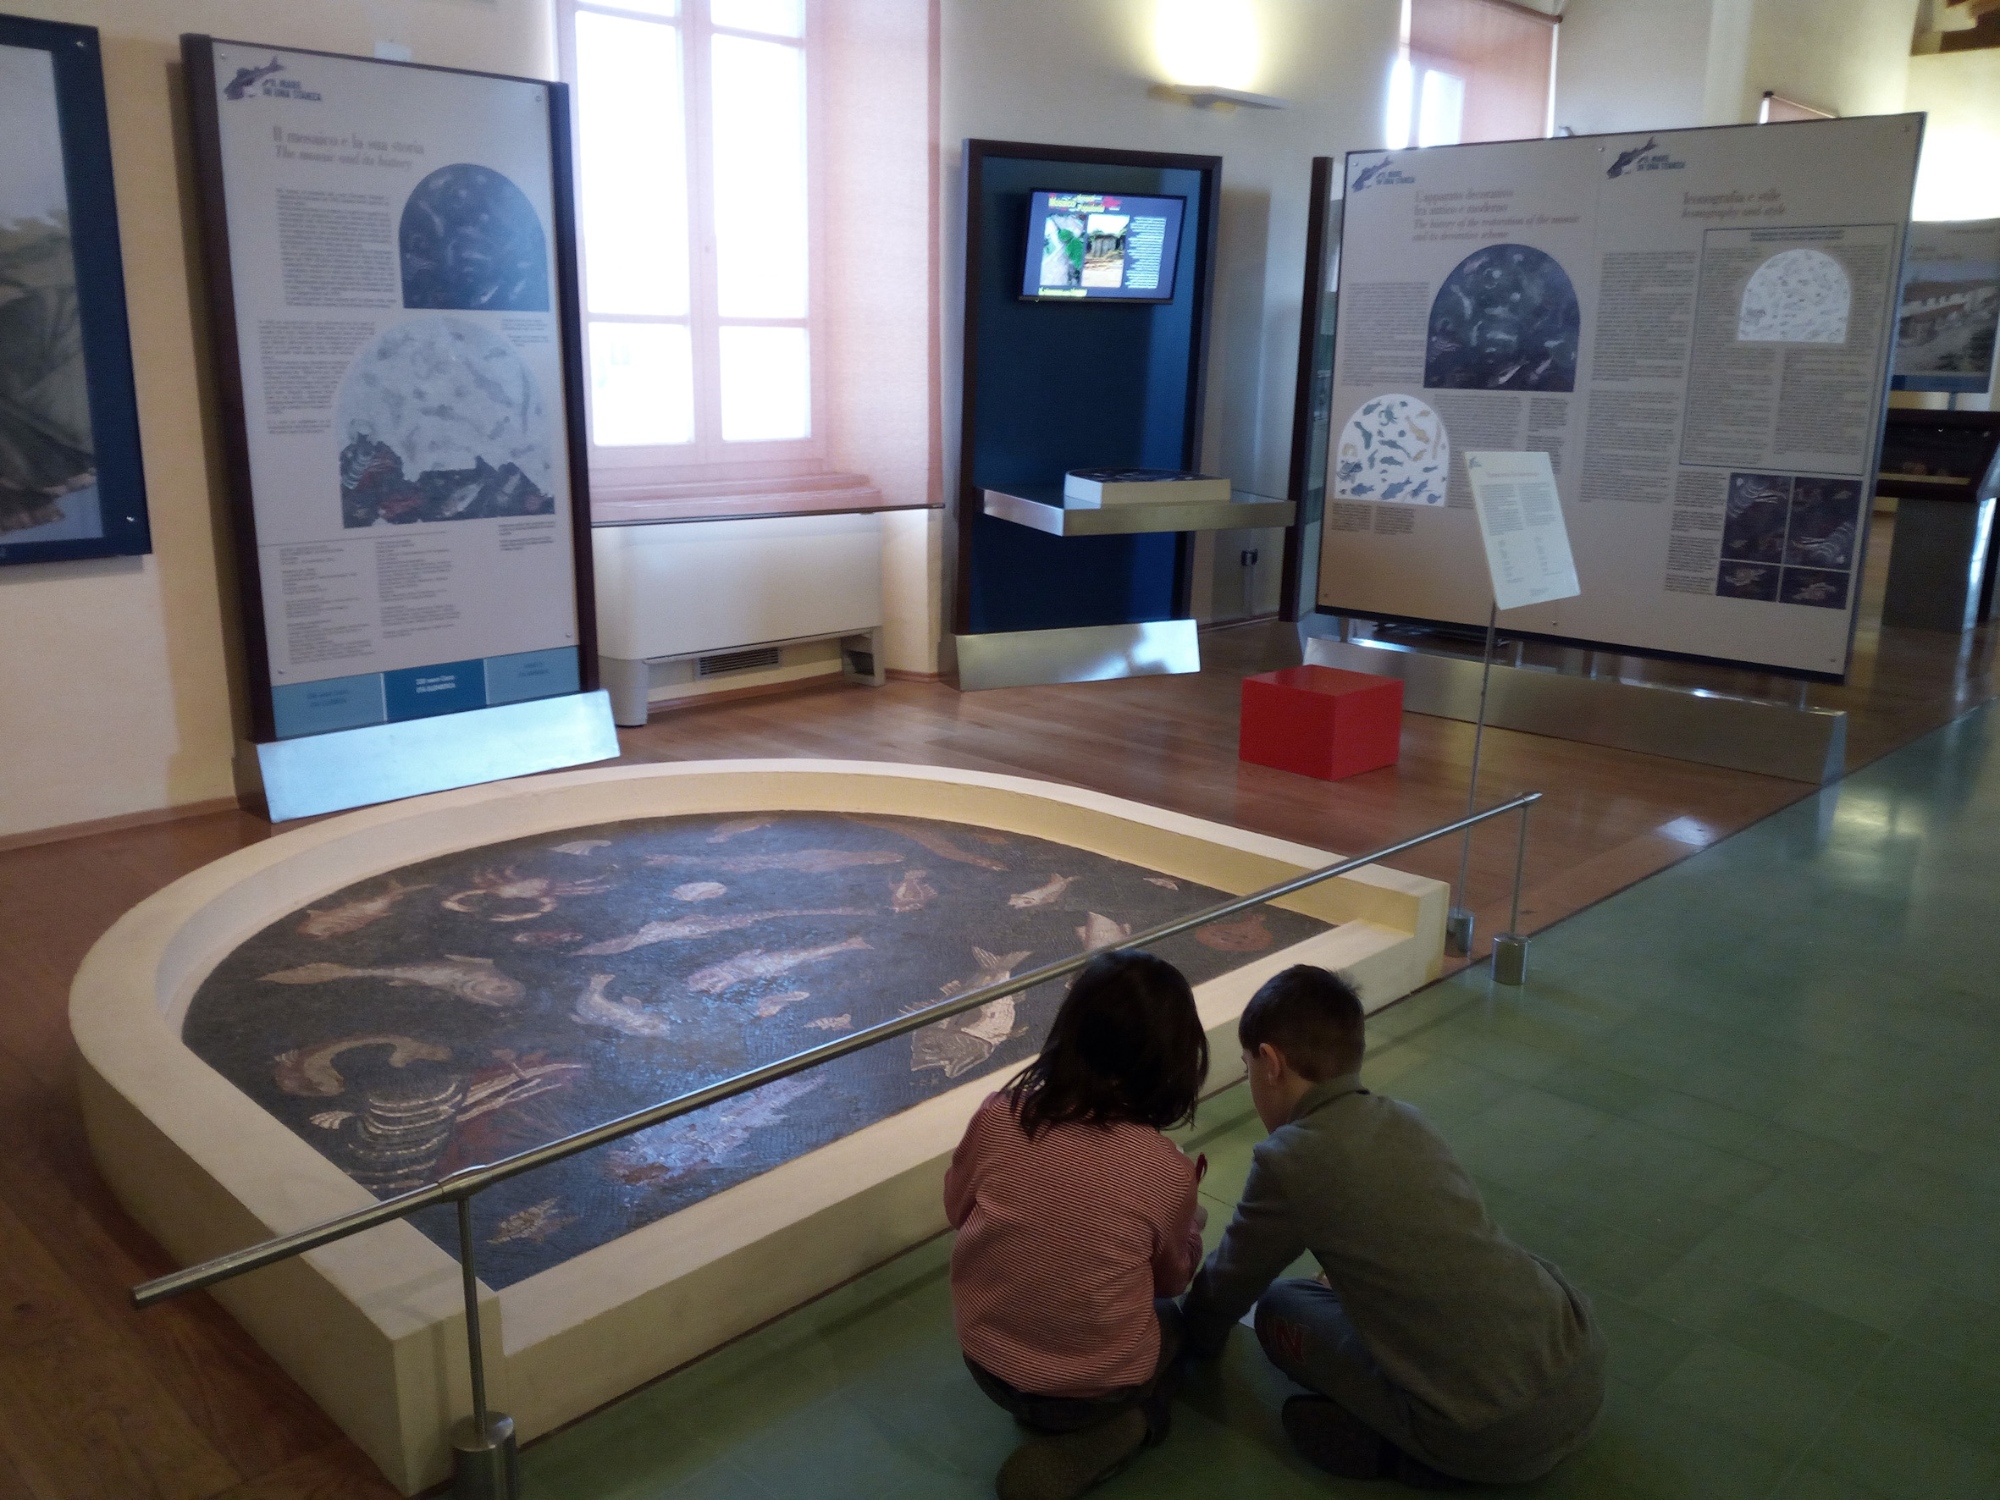 Museo Archeologico di Populonia mosaico dei pesci